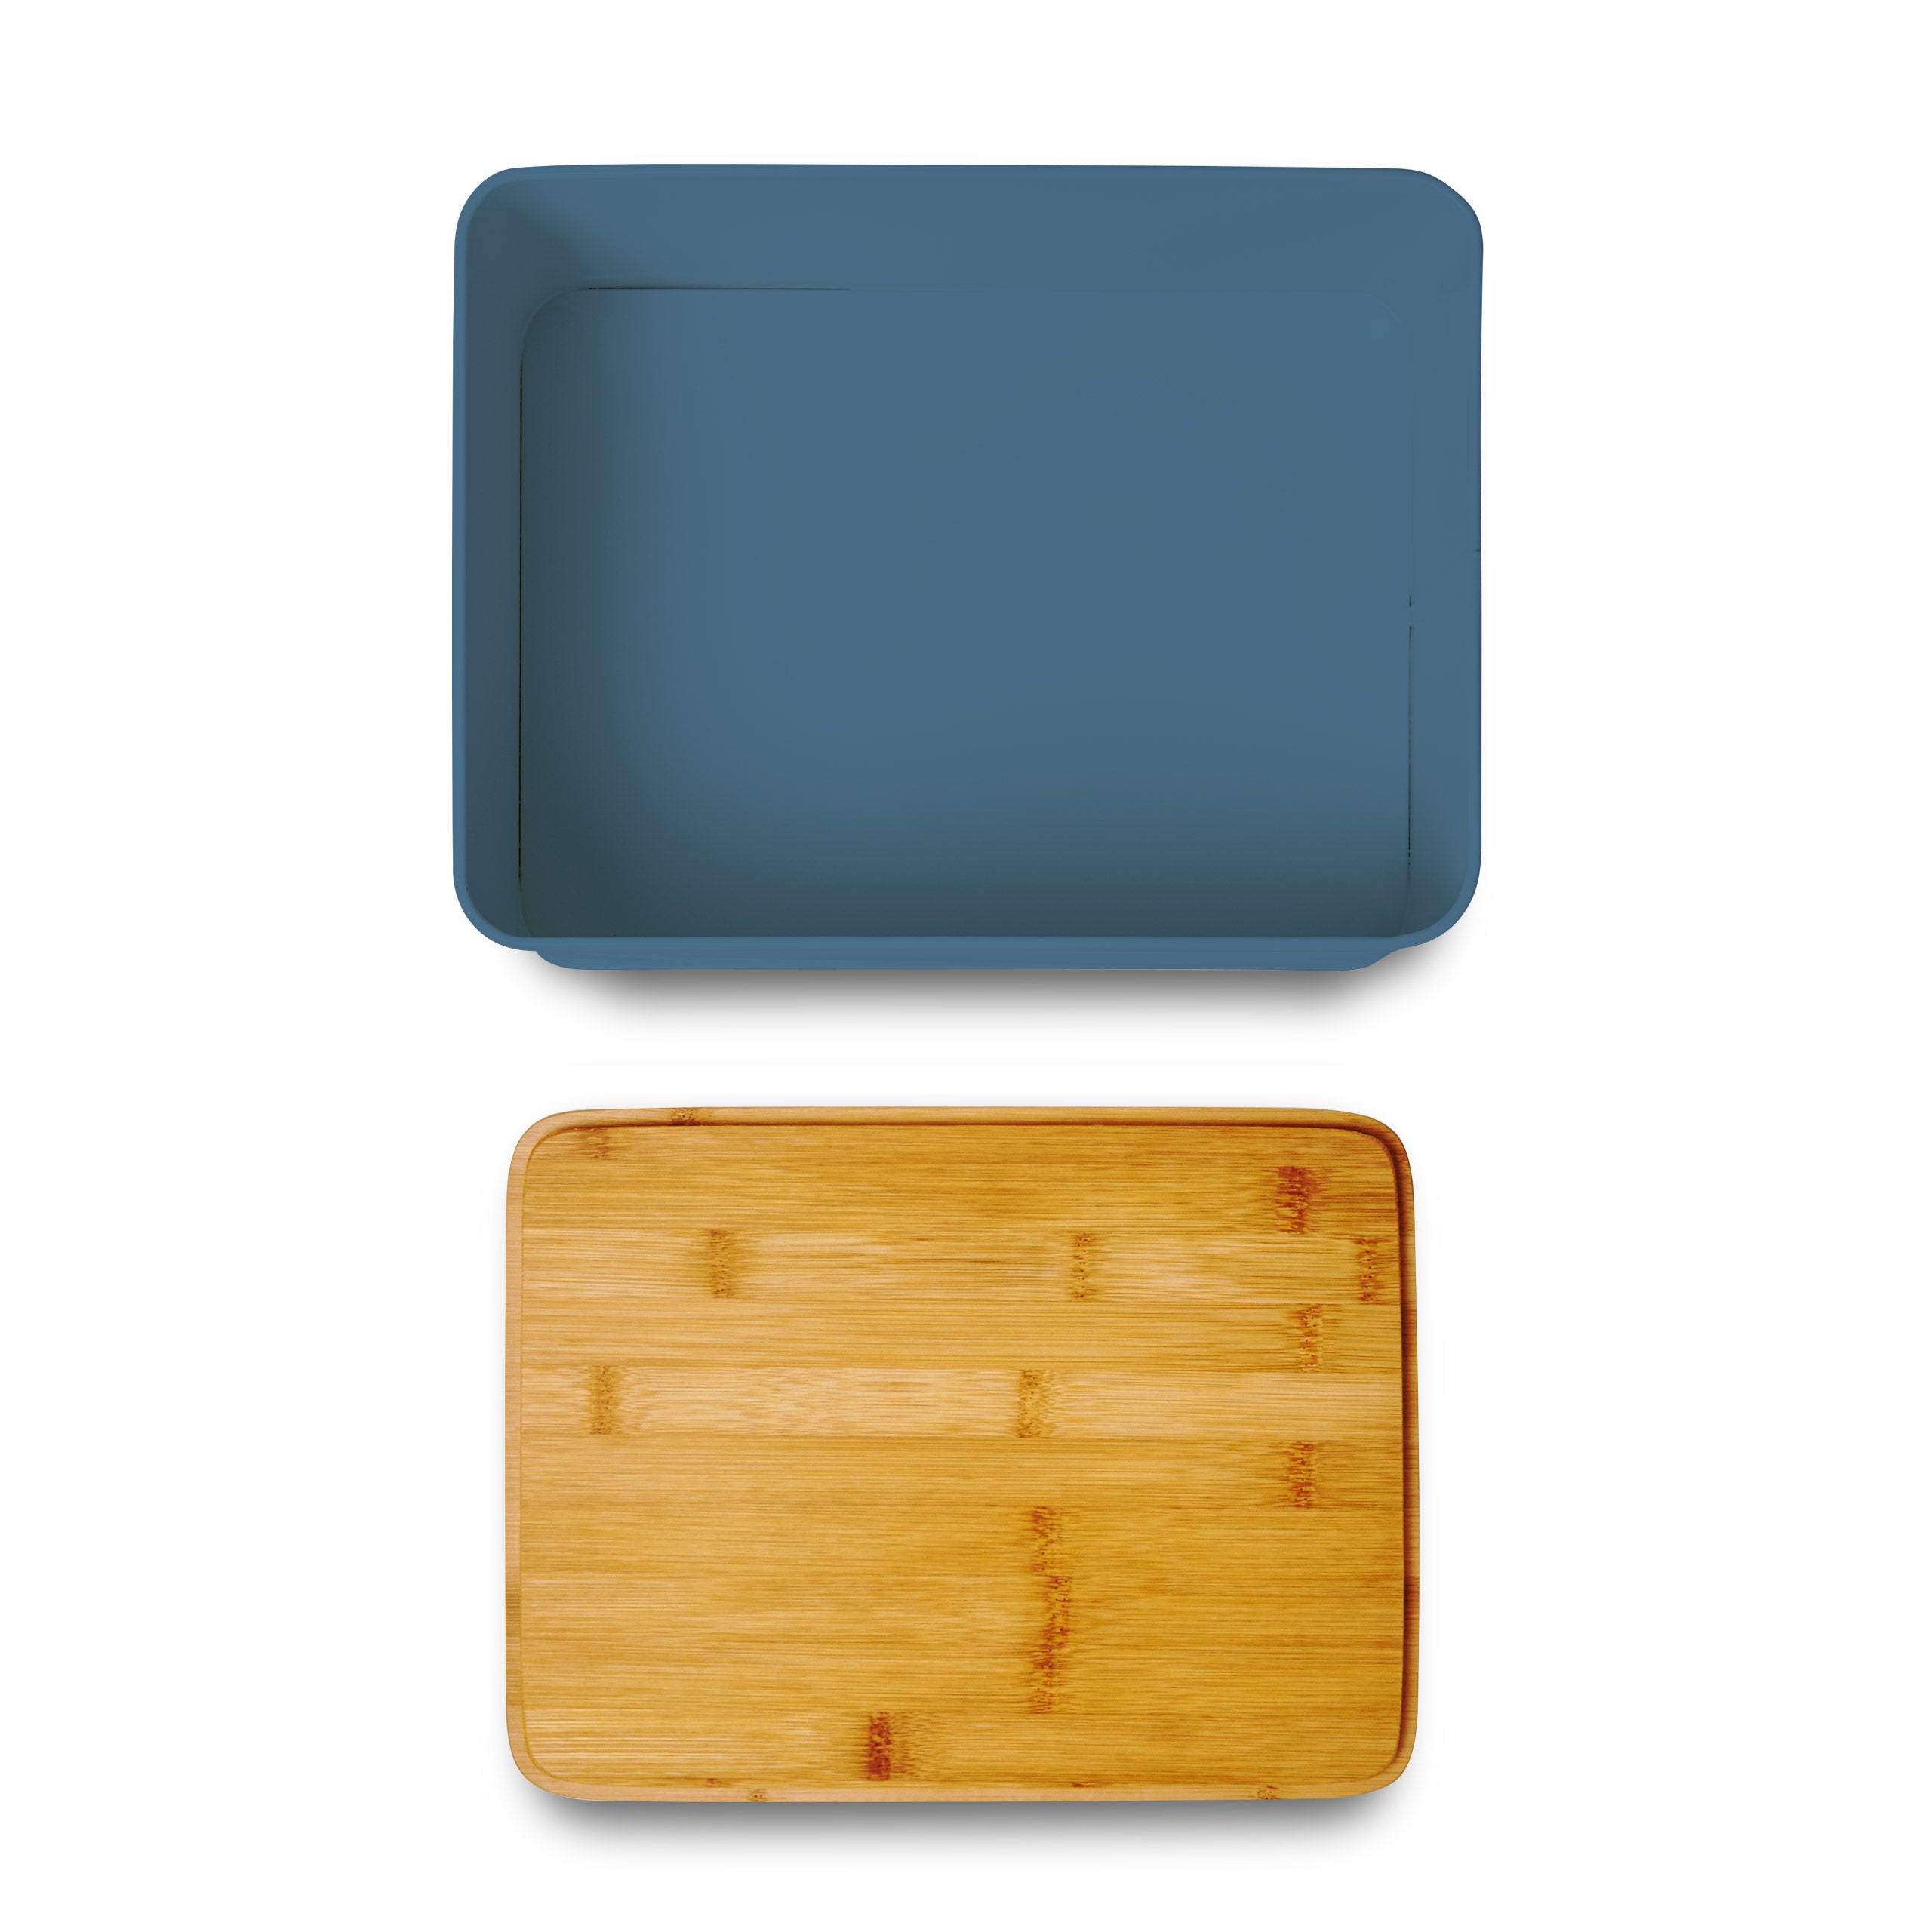 Cuisine Brotkasten aus Metall mit Bambus Deckel - Rechteckig 30,5 x 23,5 x 14 cm - Blau